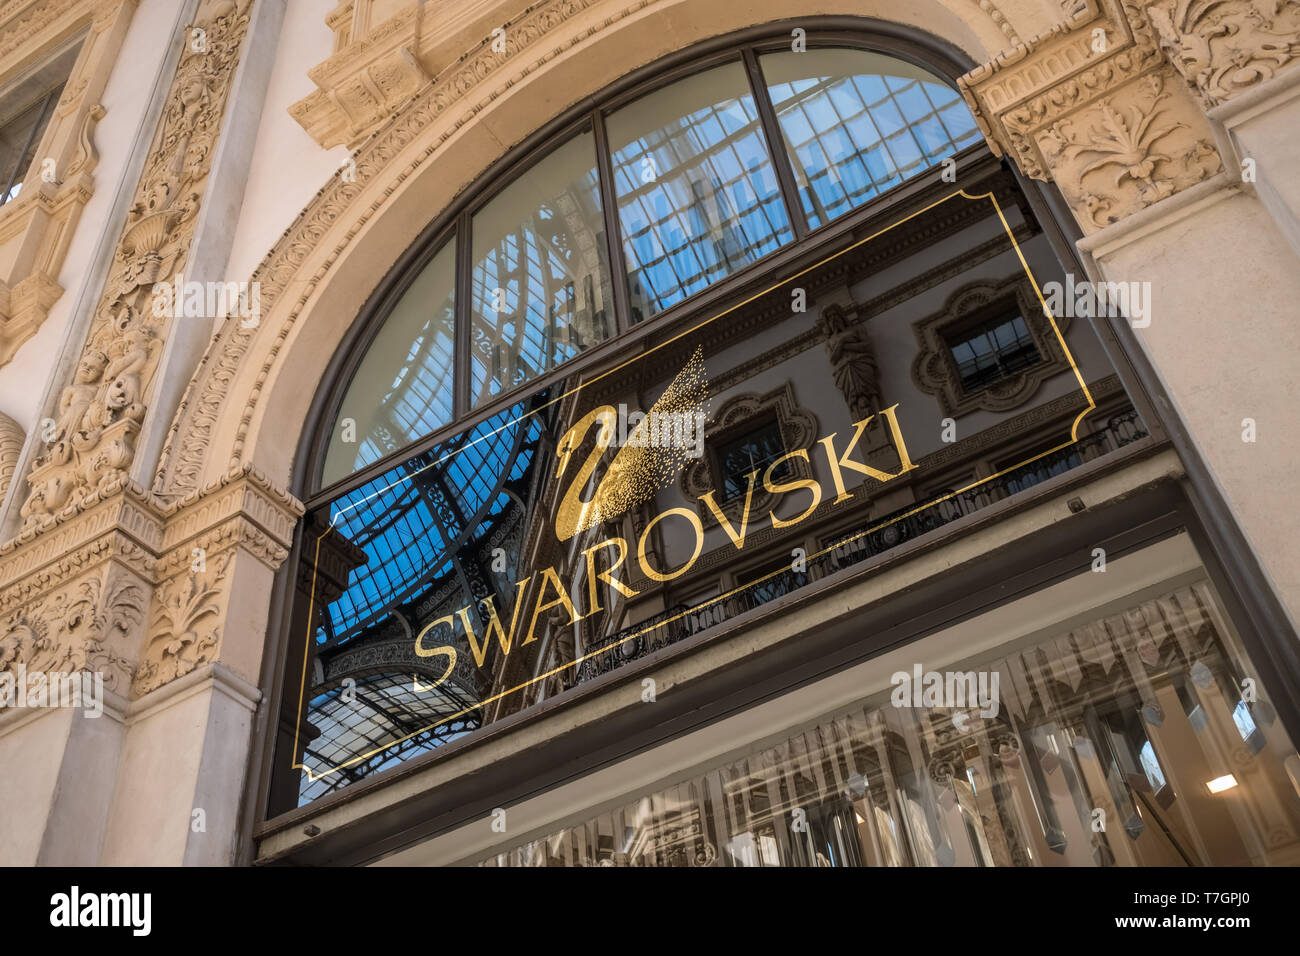 Swarovski Stores, die Galleria Vittorio Emanuele II Einkaufspassage Innenraum, Mailand, Italien Stockfoto